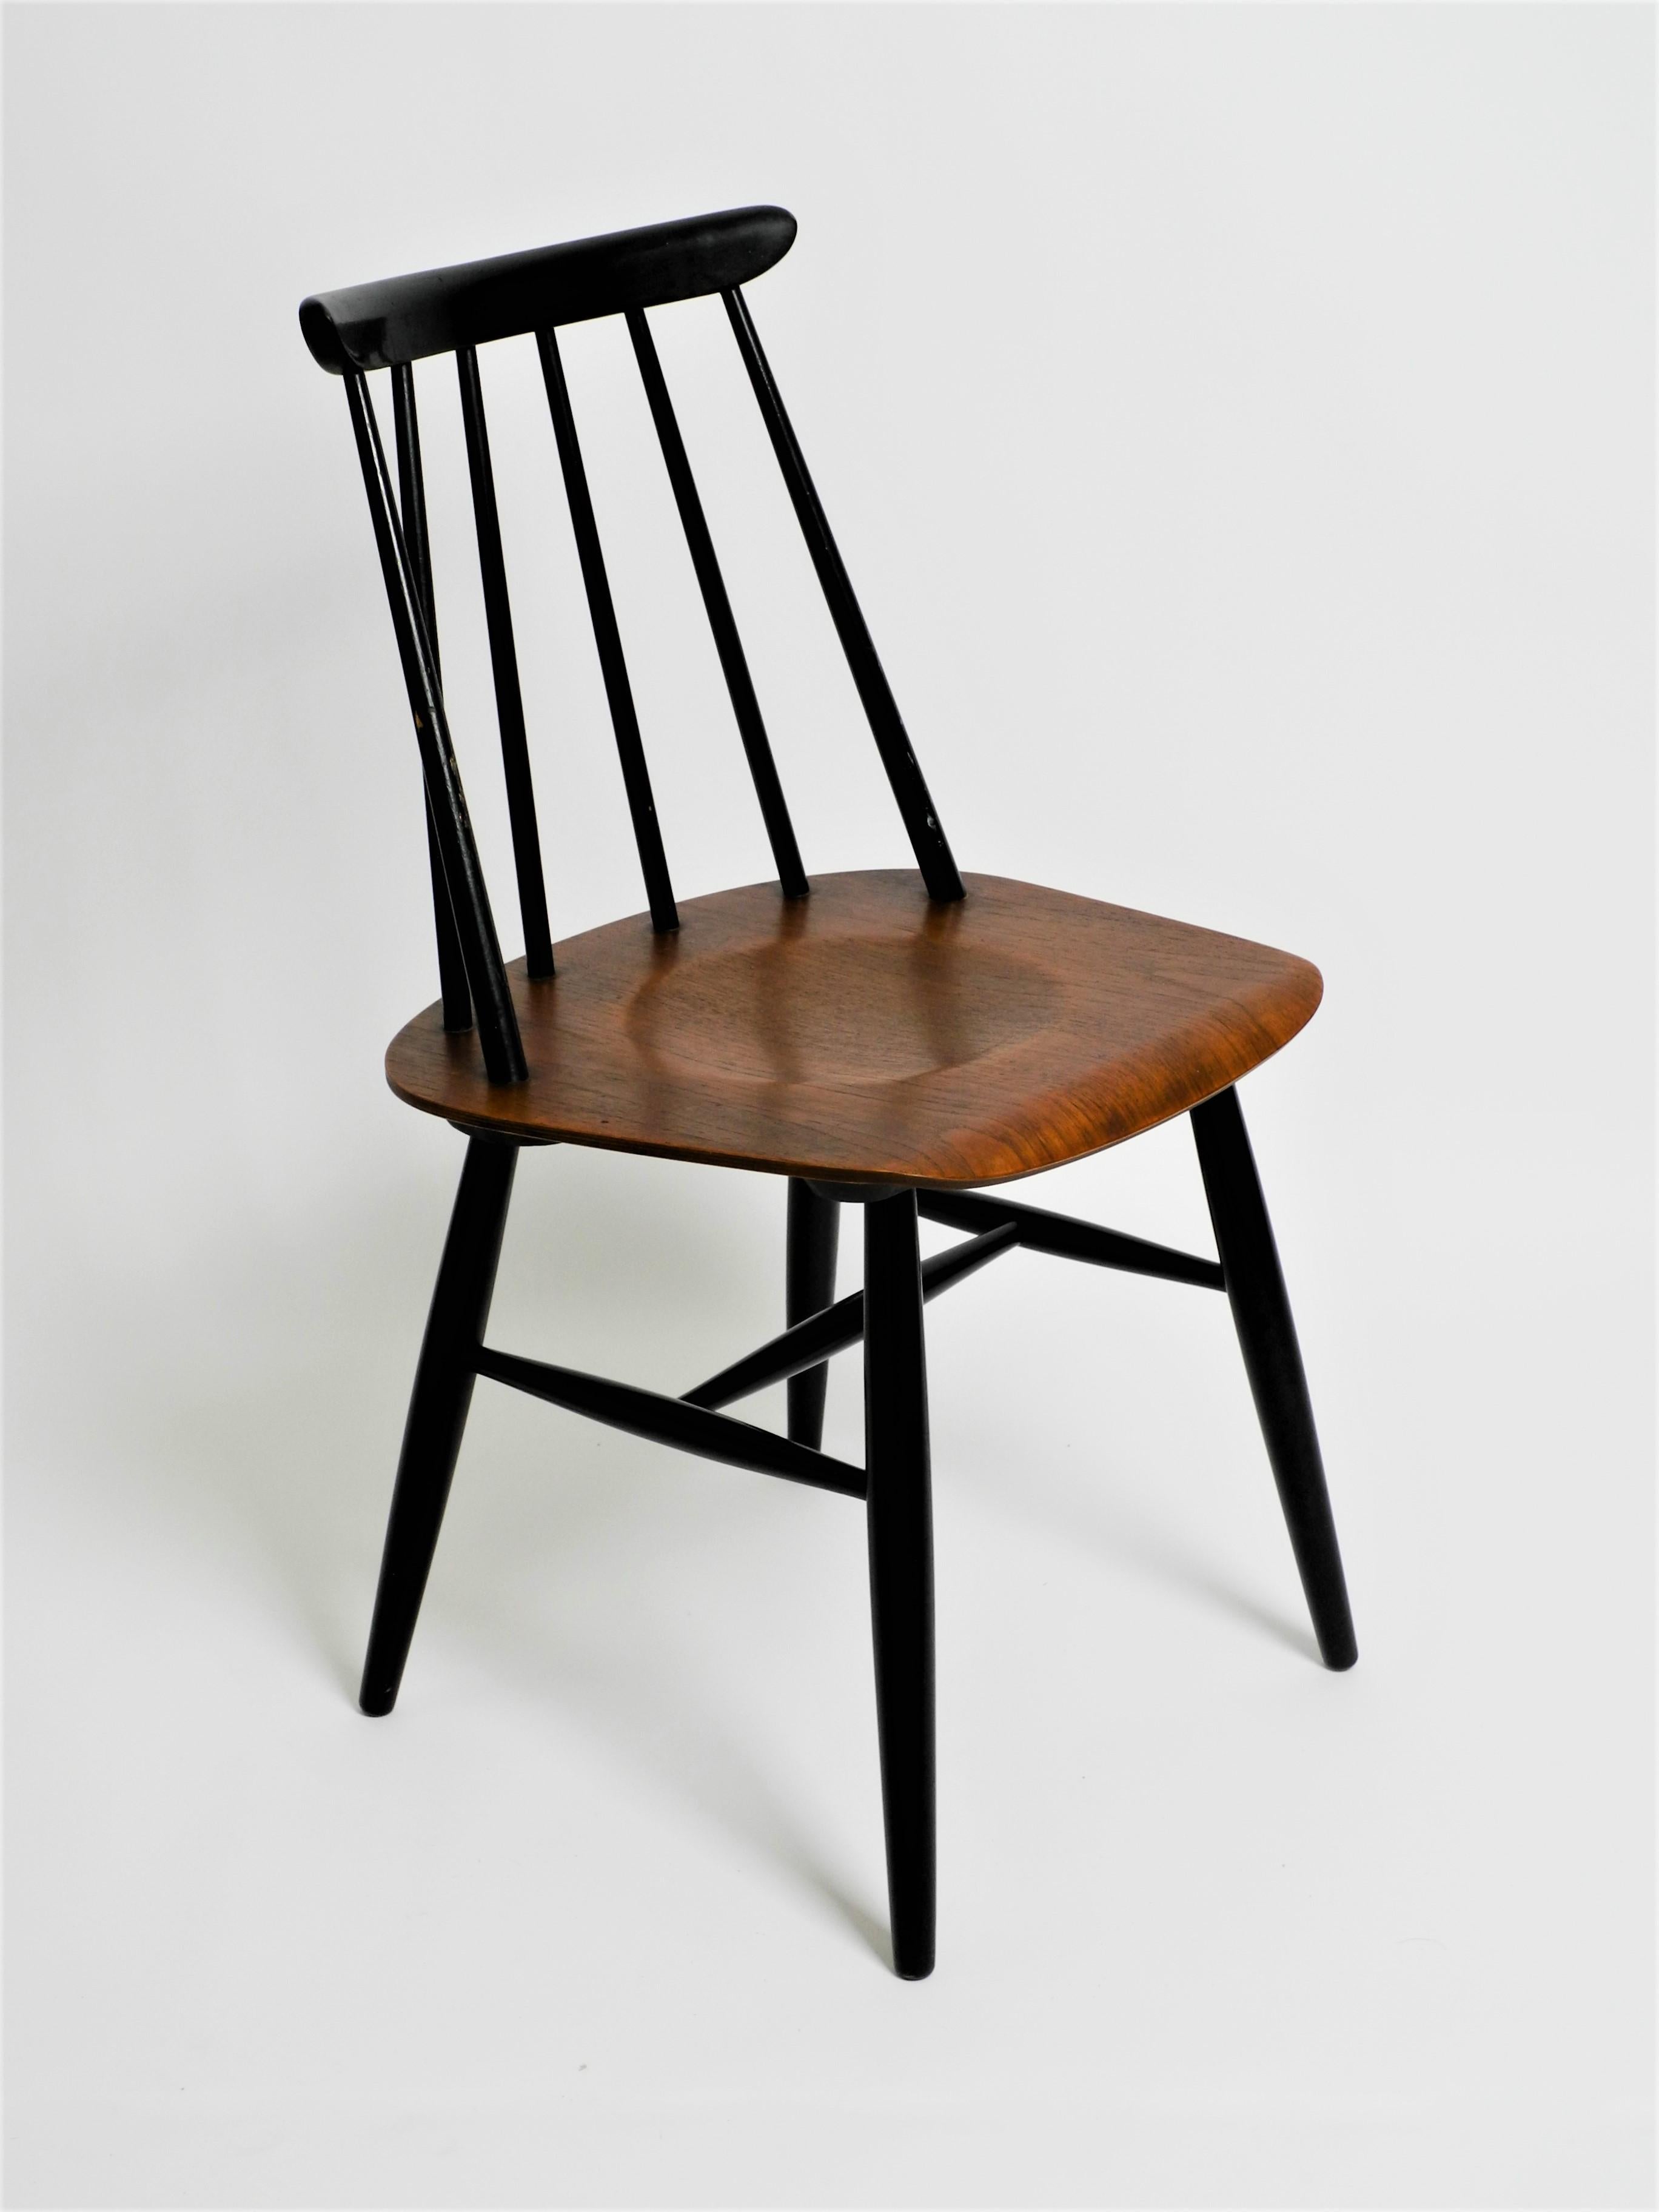 Original Fanett Esszimmerstuhl von Ilmari Tapiovaara für ASKO. Aus den 60er Jahren. Mit dem Label des Herstellers auf der Unterseite.

Der Stuhl ist in einem schönen Vintage-Zustand. Er weist altersbedingte Gebrauchsspuren an Sitz, Rückenlehne und